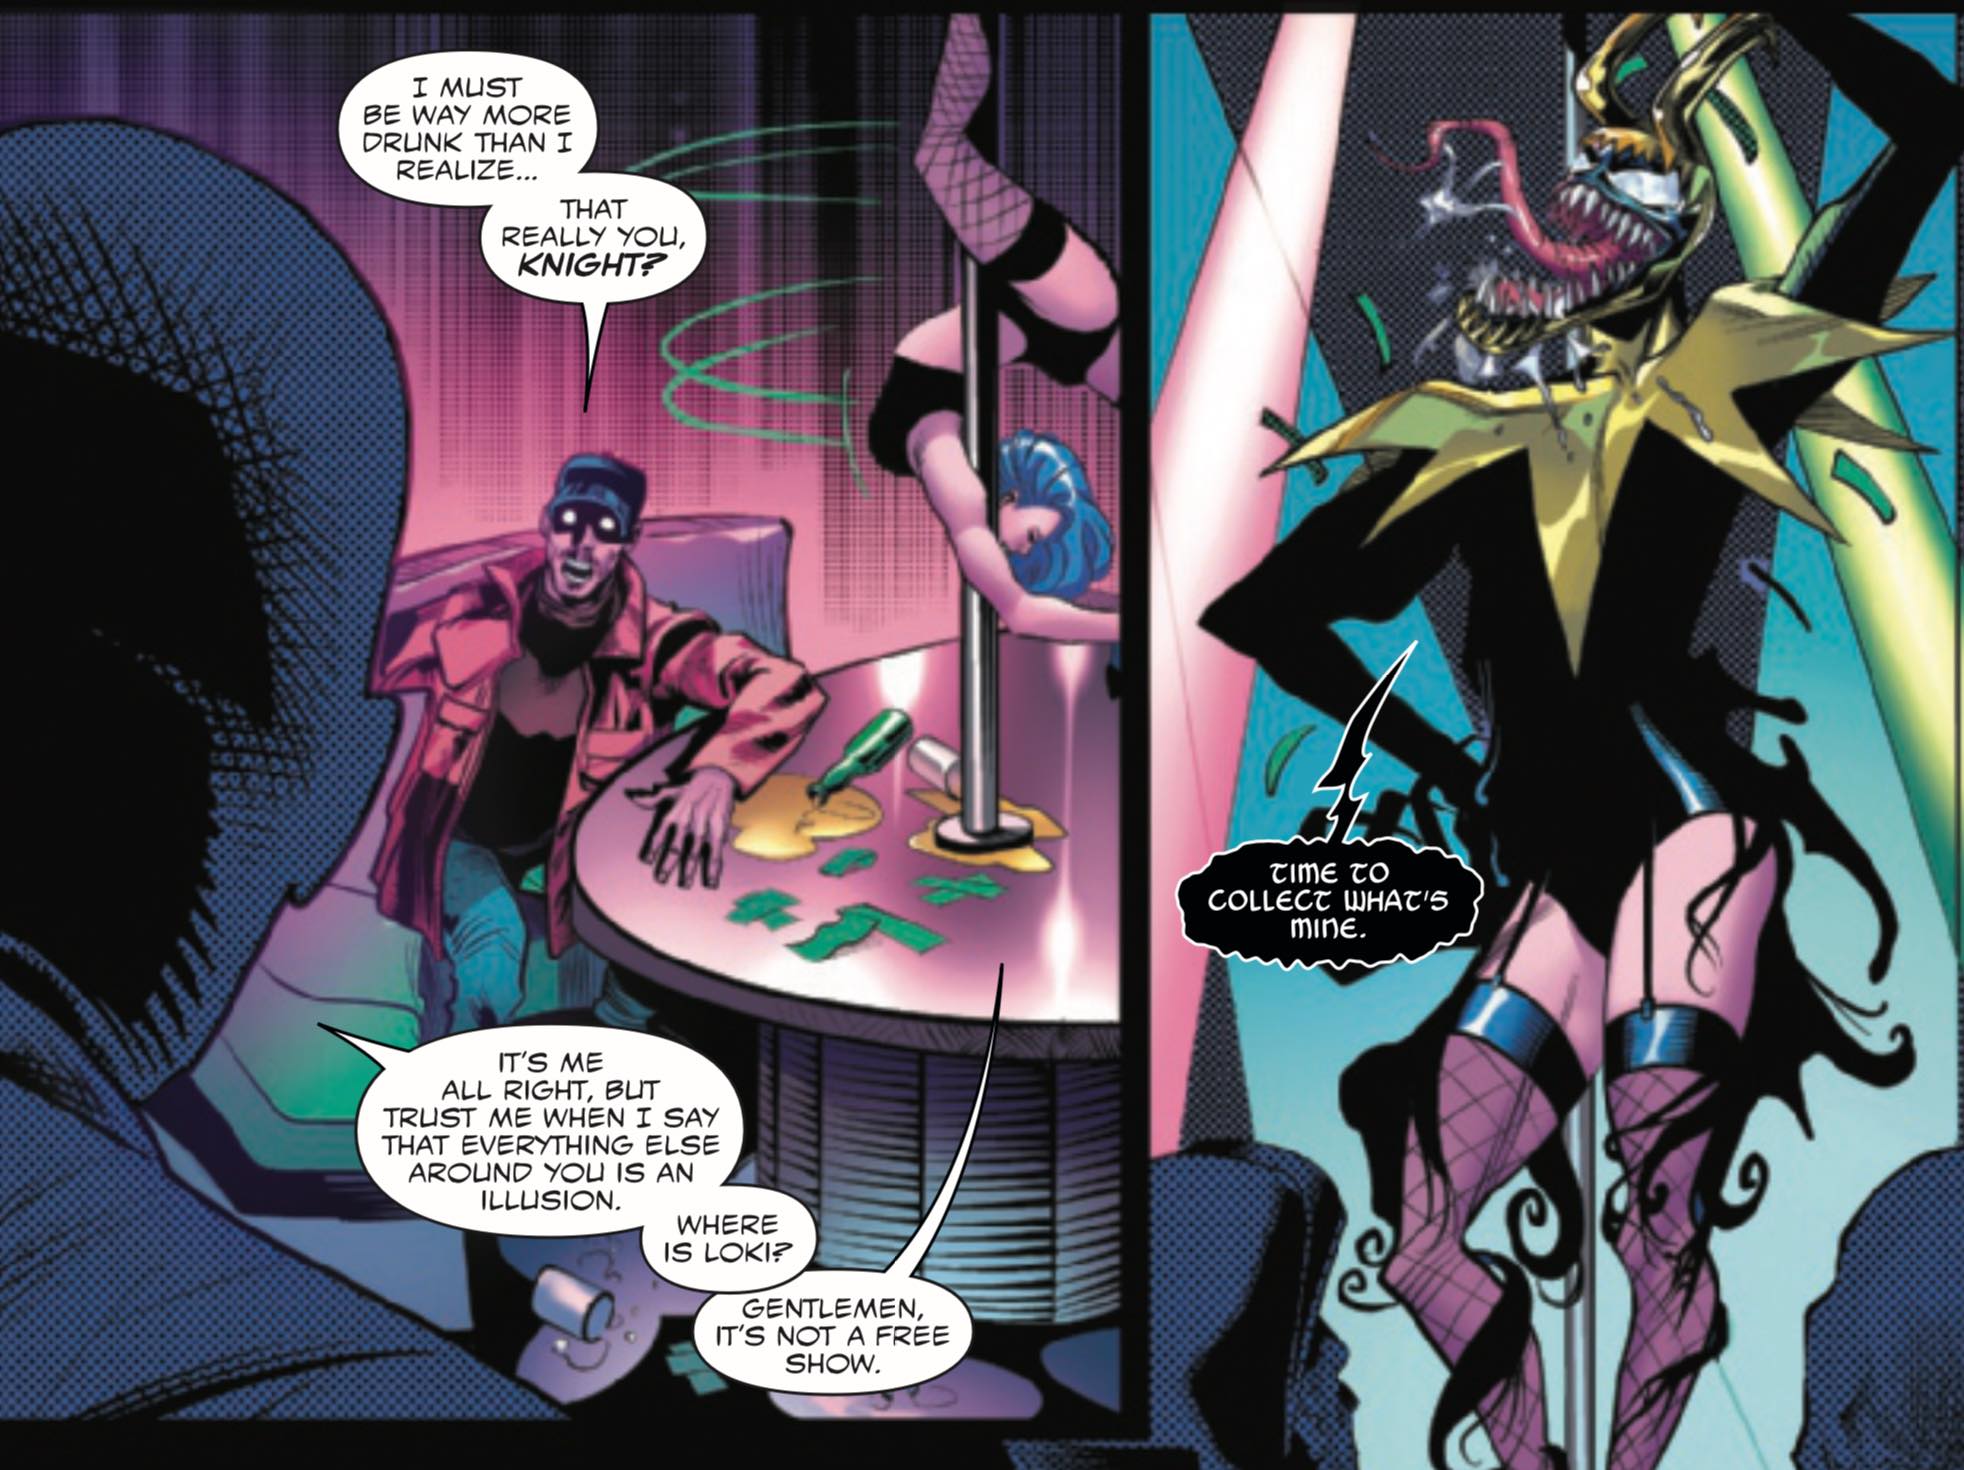 A stripper Loki bonded with the Venom symbiote